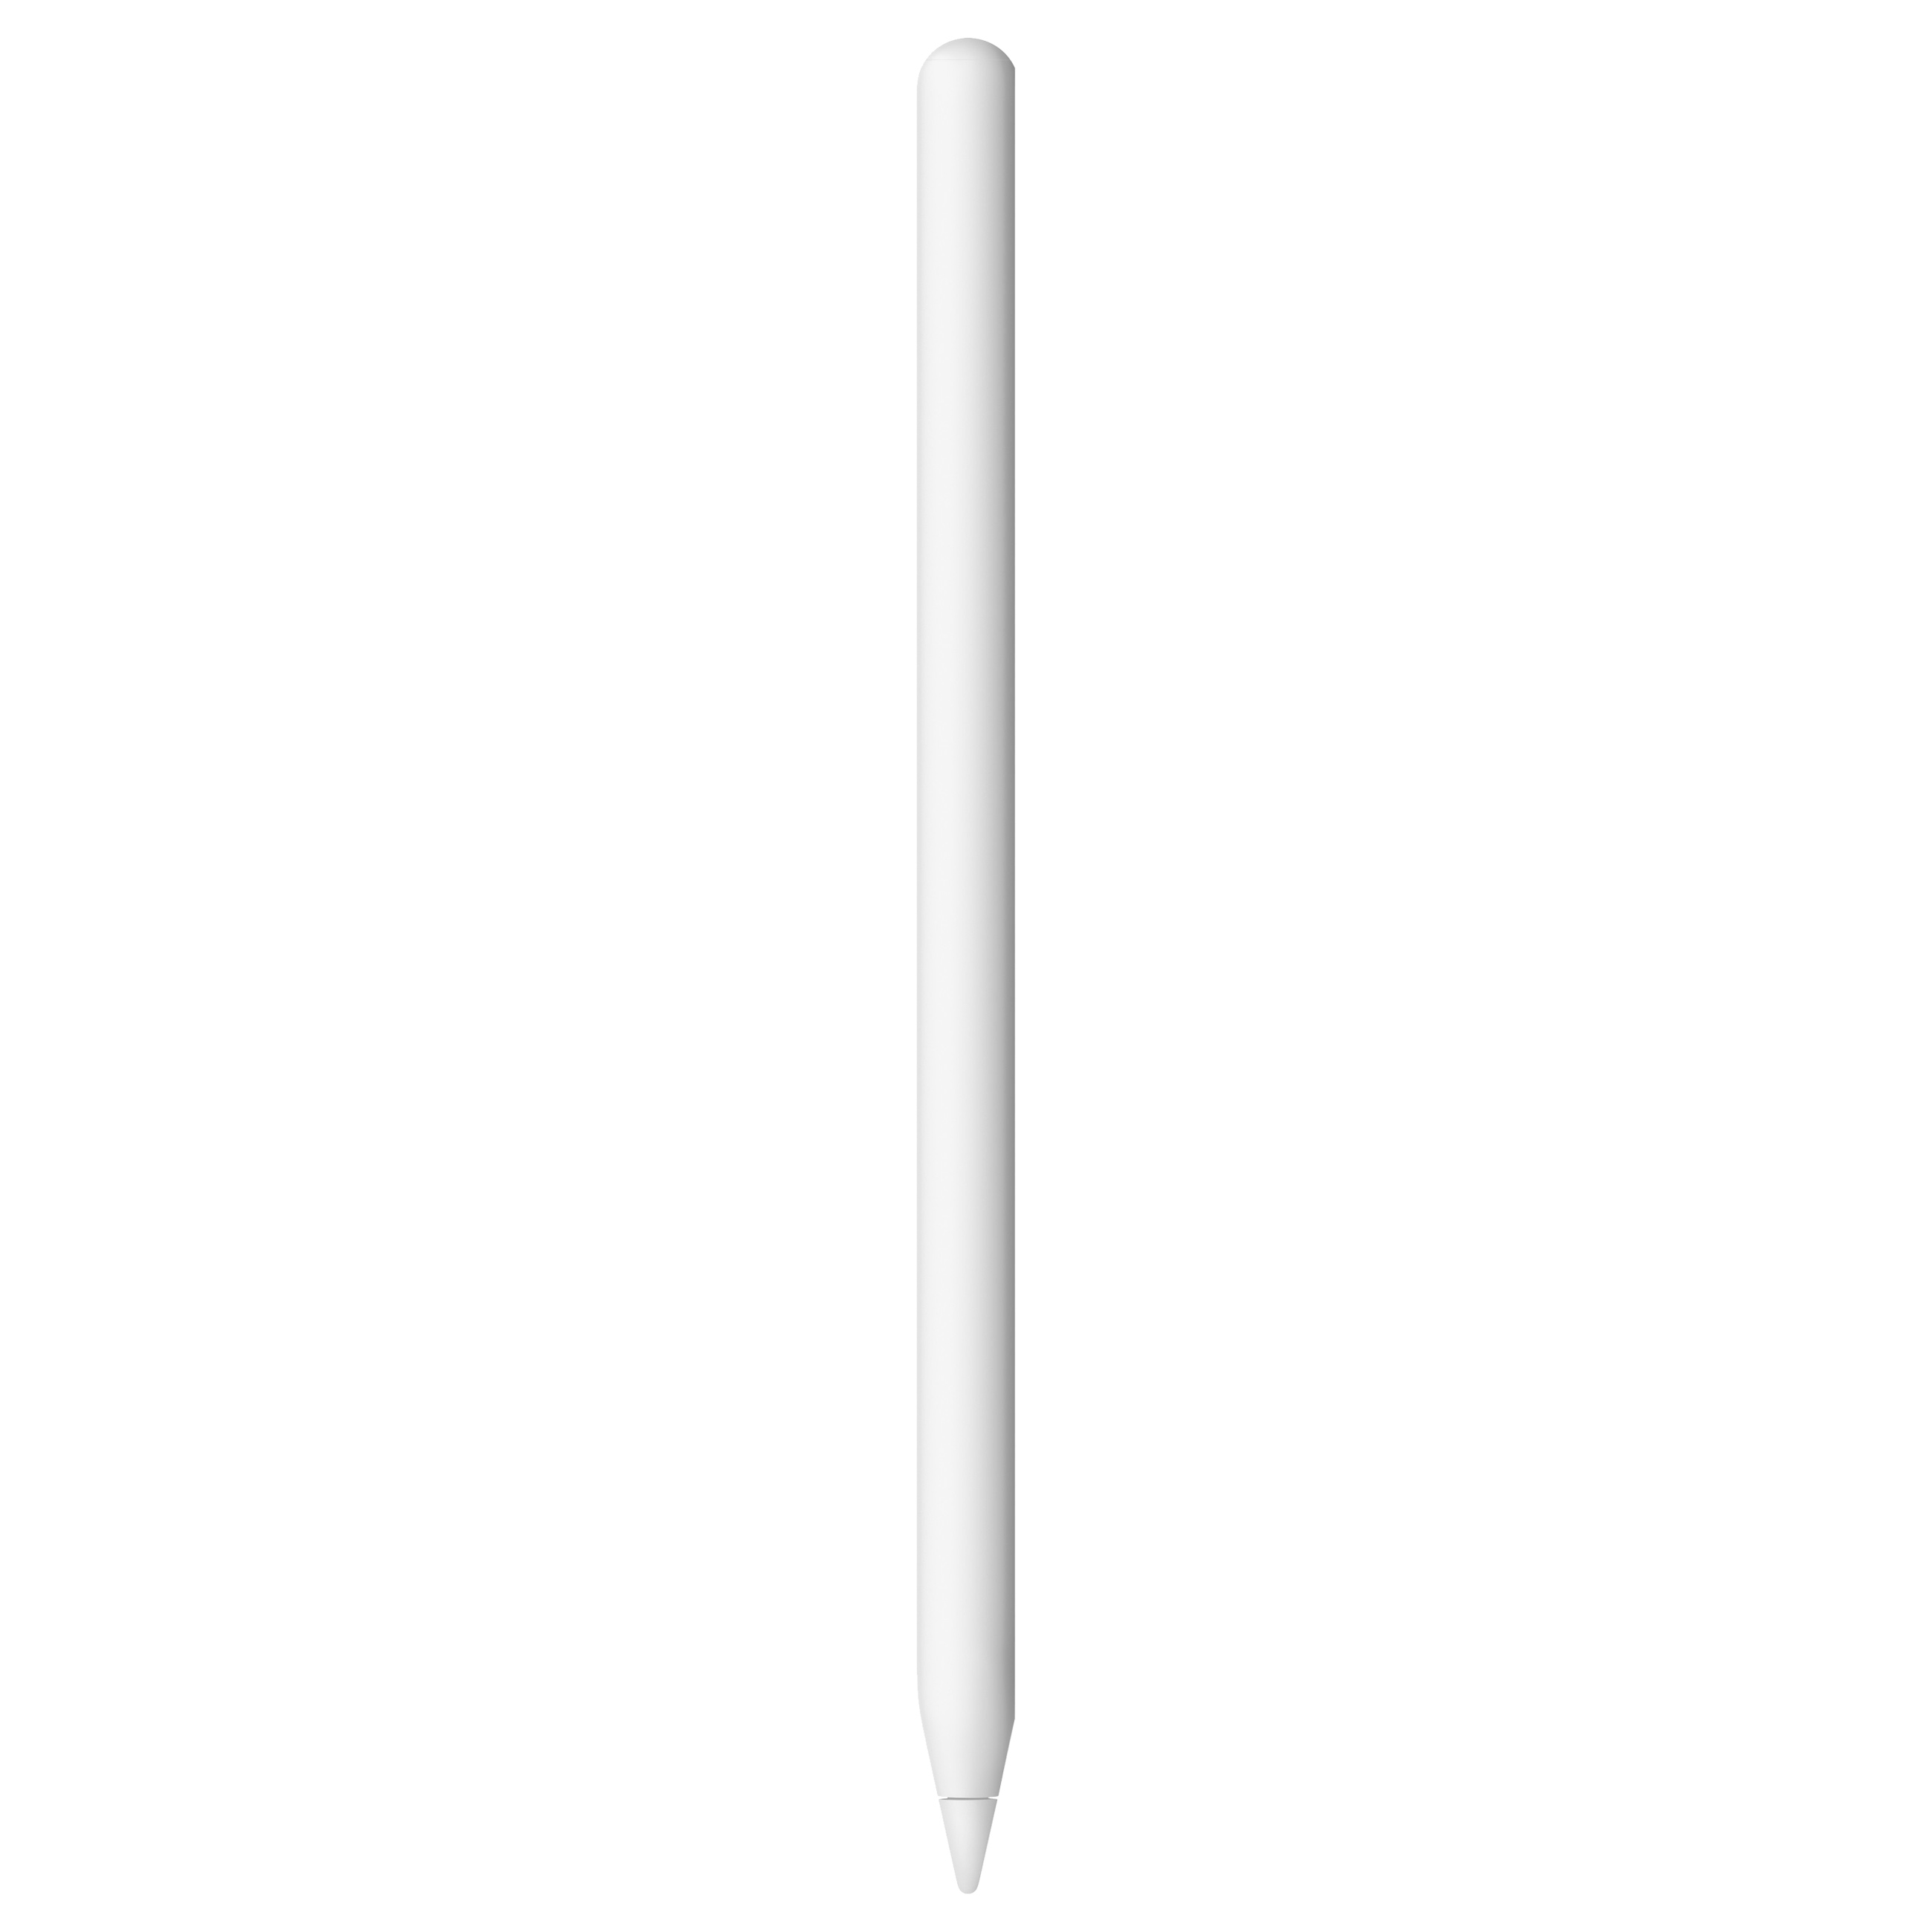 Image of Apple Pencil (2. Generation) - EingabestifteOVP geöffnet - geöffnet